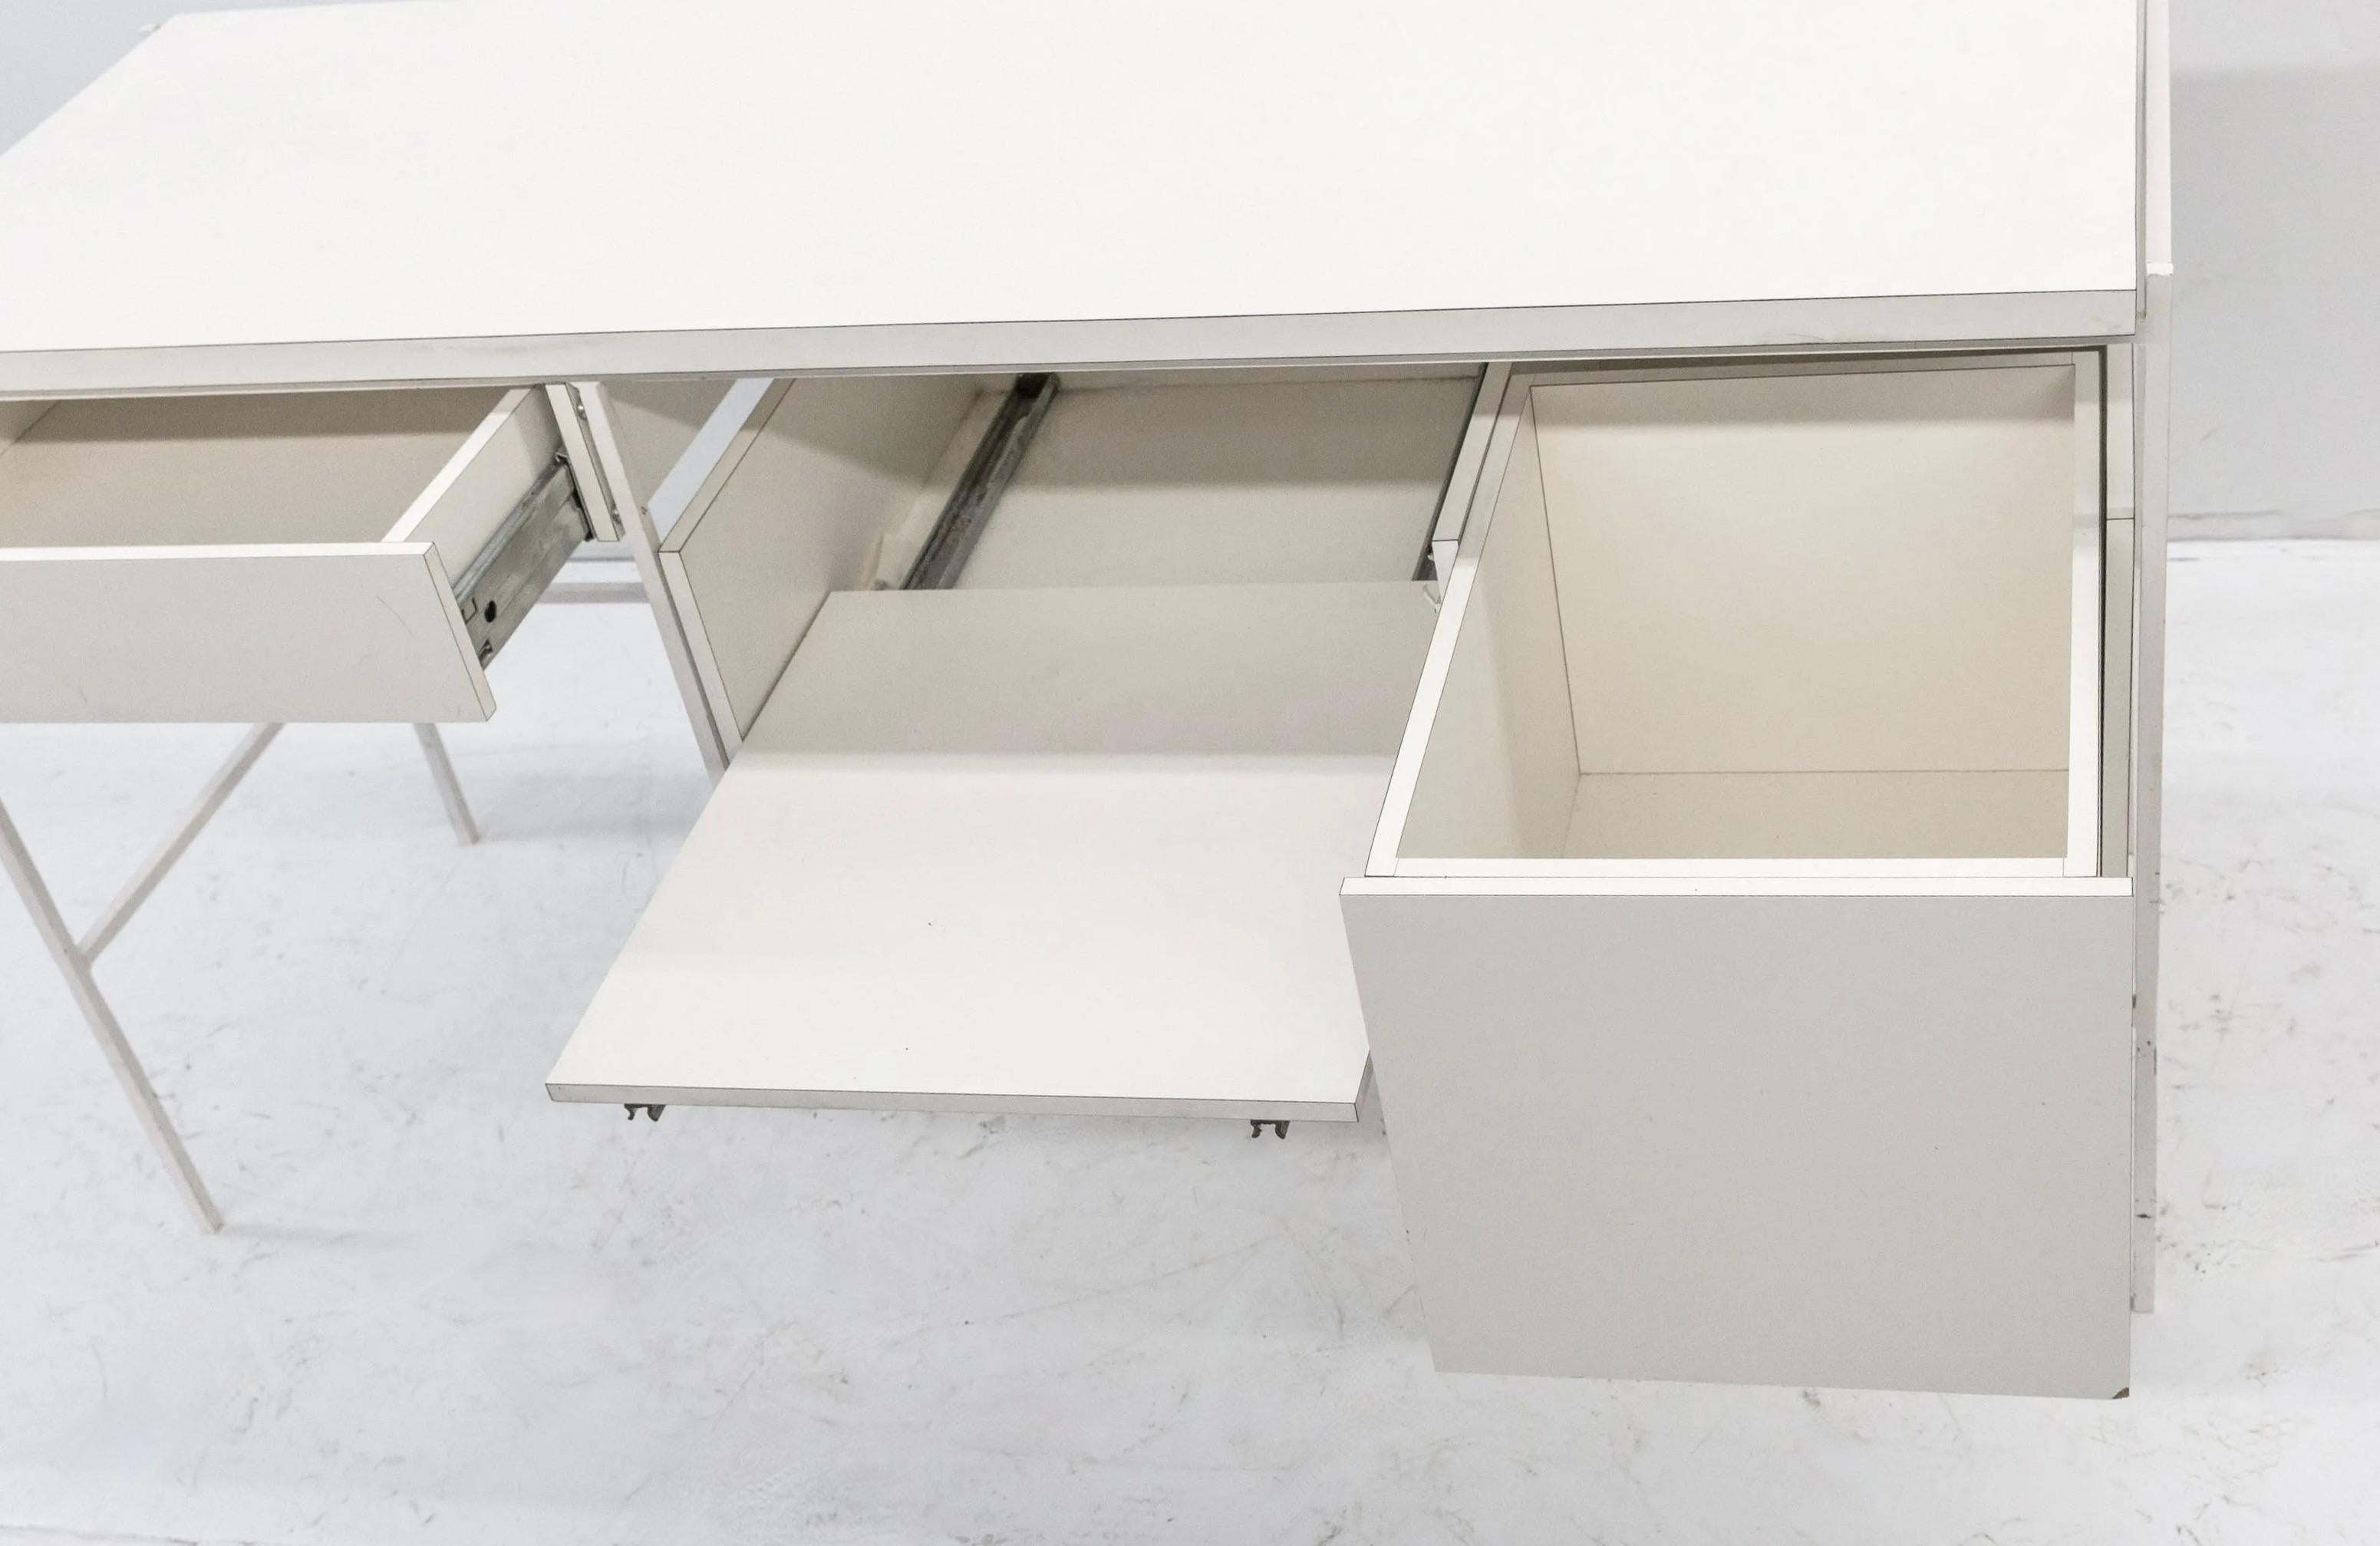 Ladislav Rado White Enameled Steel Modern Desk, Vanity, 1955, Knoll and Drake For Sale 2